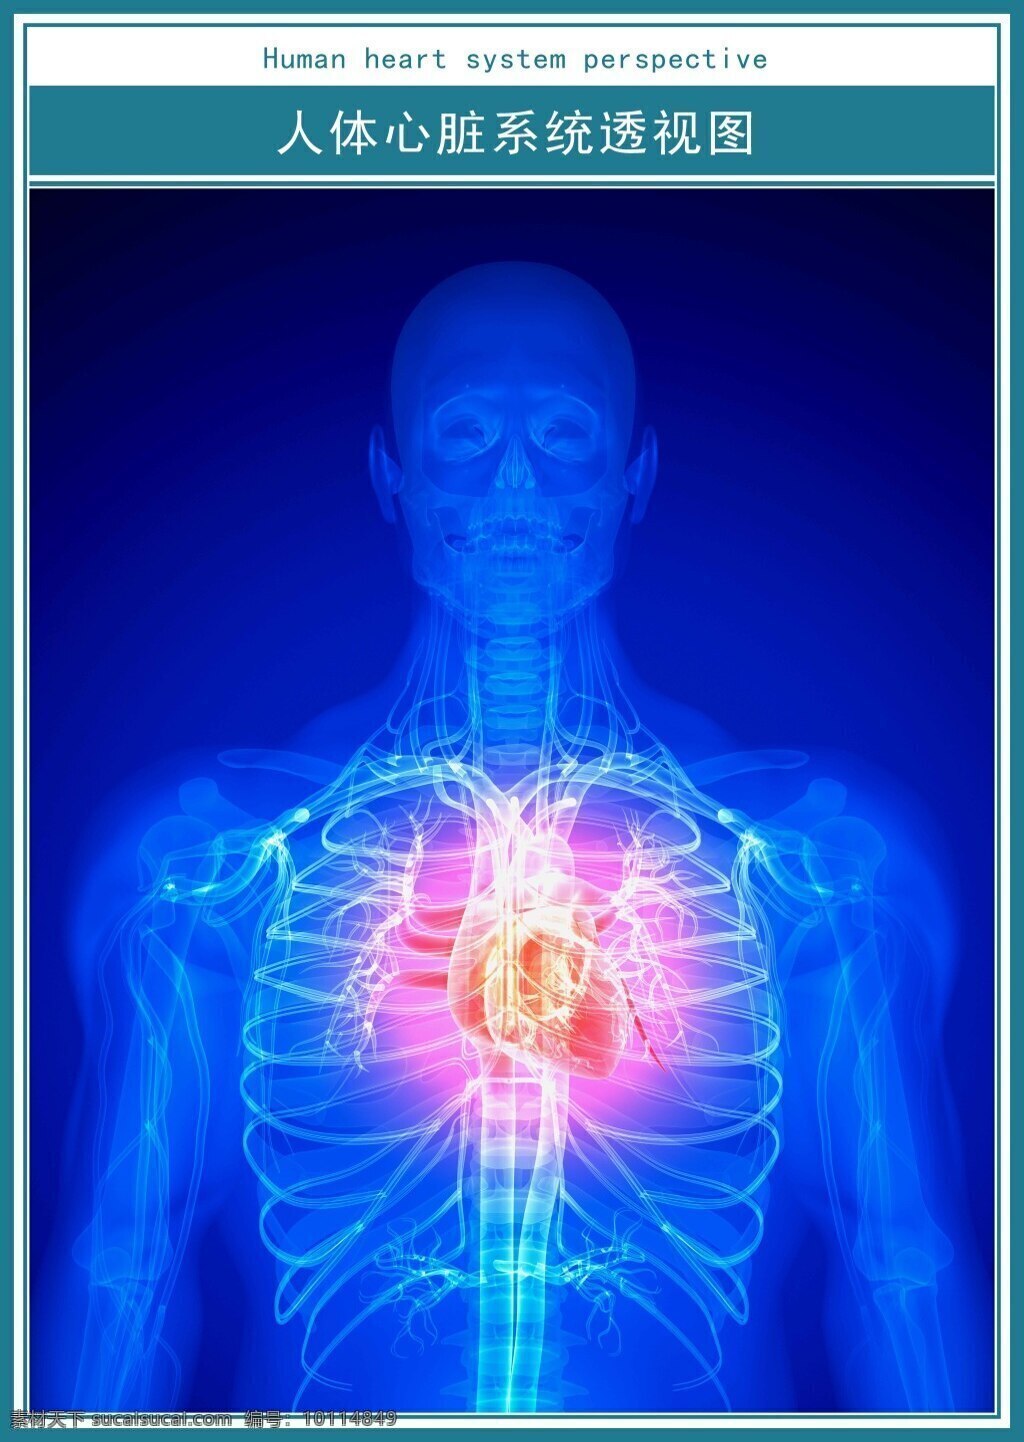 医学 科技 展板 人体 心脏 透视图 超 高清 医院 科技展板 超高清 蓝色